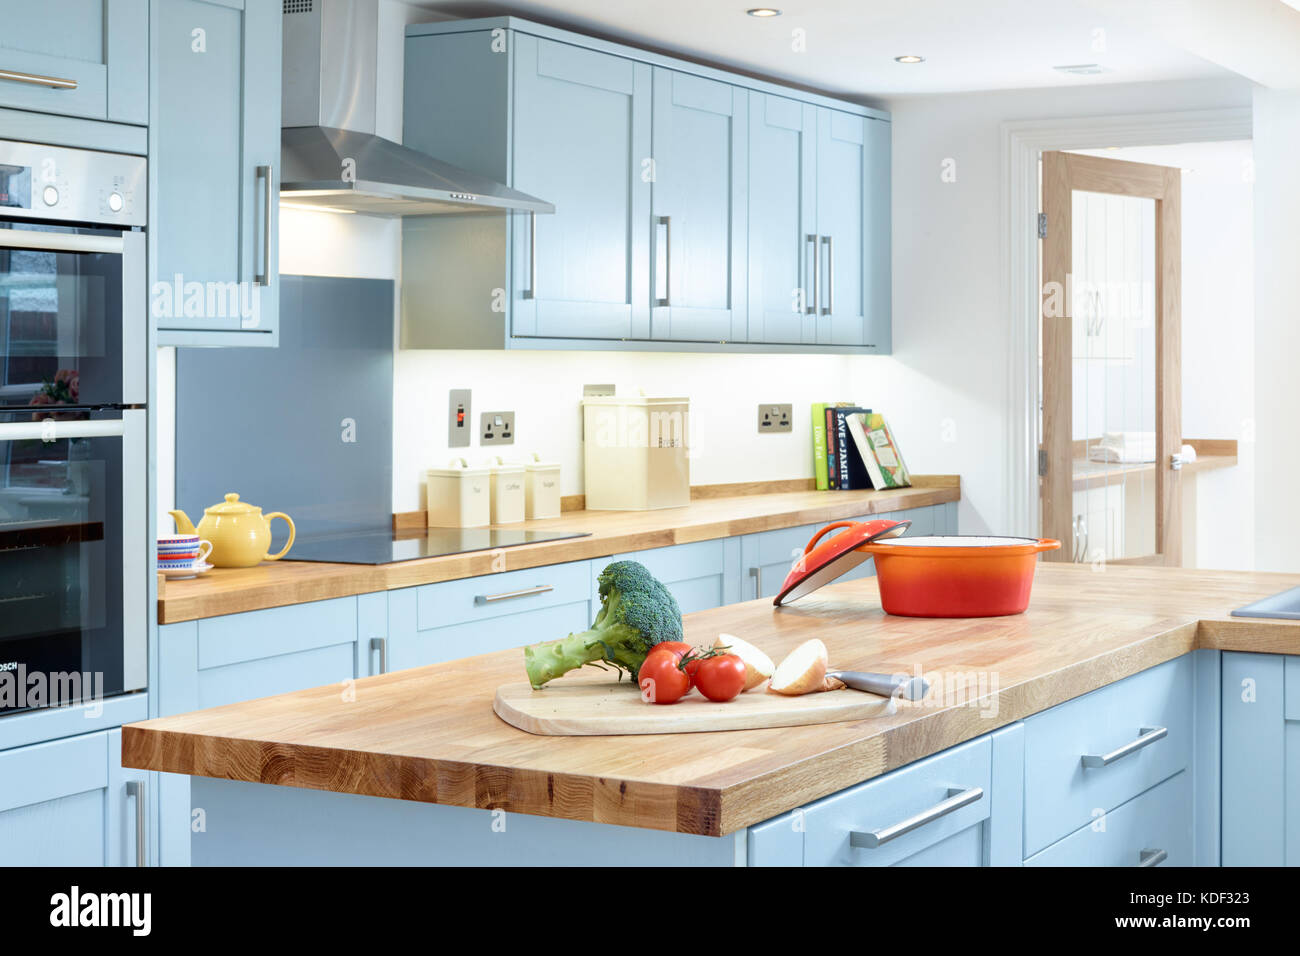 Un nuevo, moderno, de color azul, cocina de diseño de estilo shaker mostrando gabinetes, electrodomésticos y encimera con alguna preparación de comida. Foto de stock